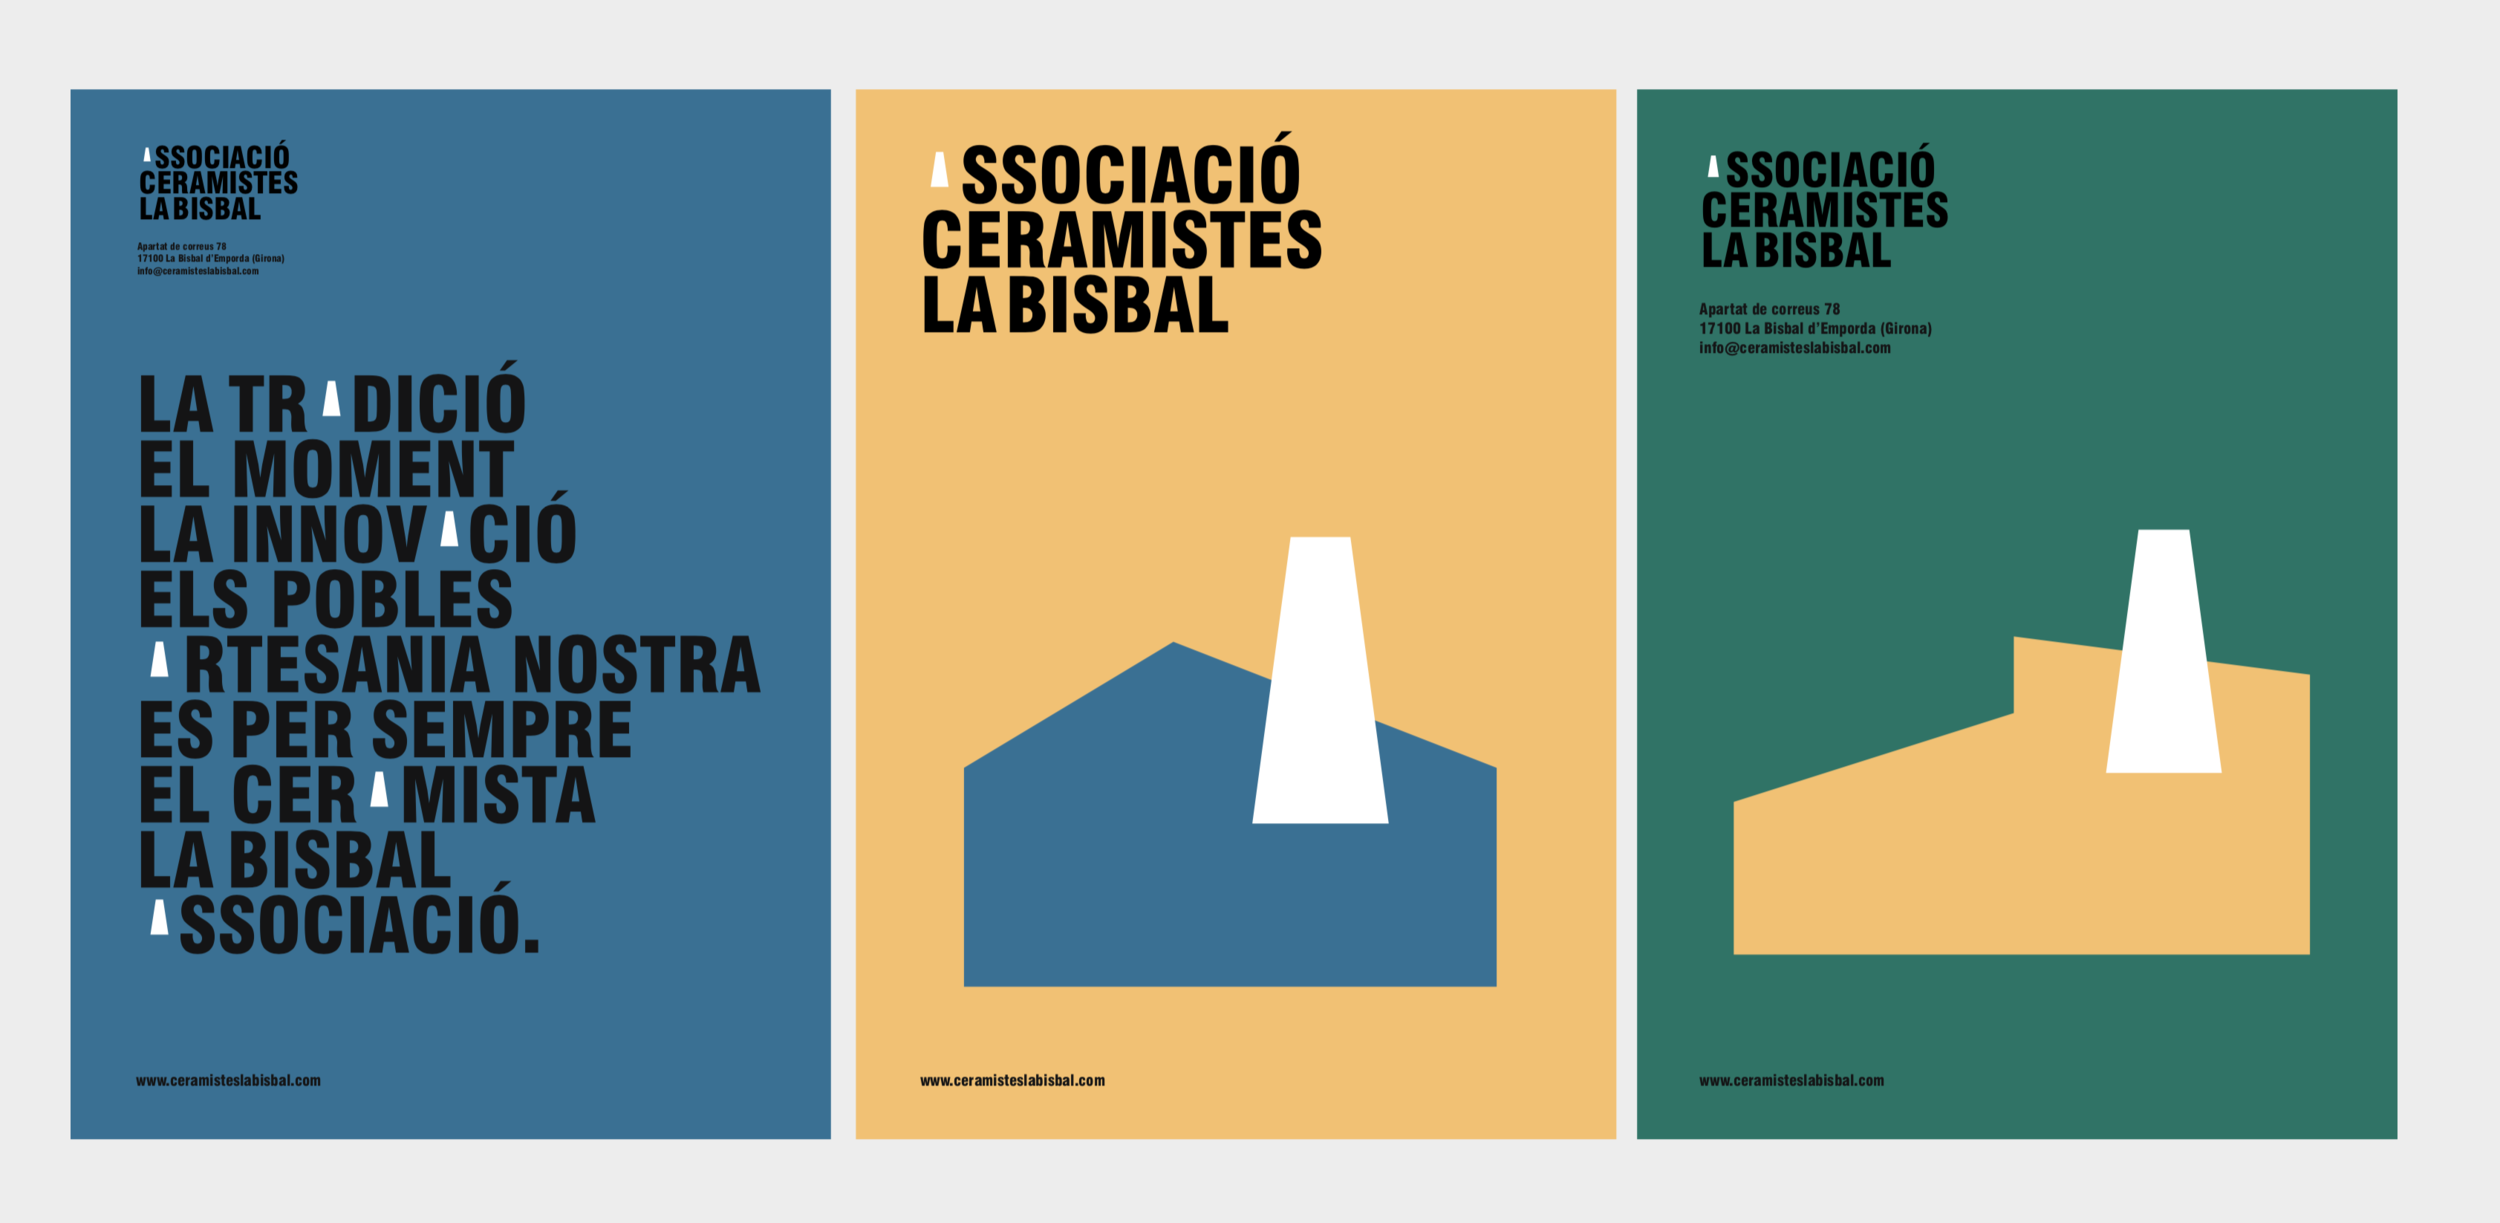 Associació Ceramistes La Bisbal by BAG Disseny STUDIO 04.png